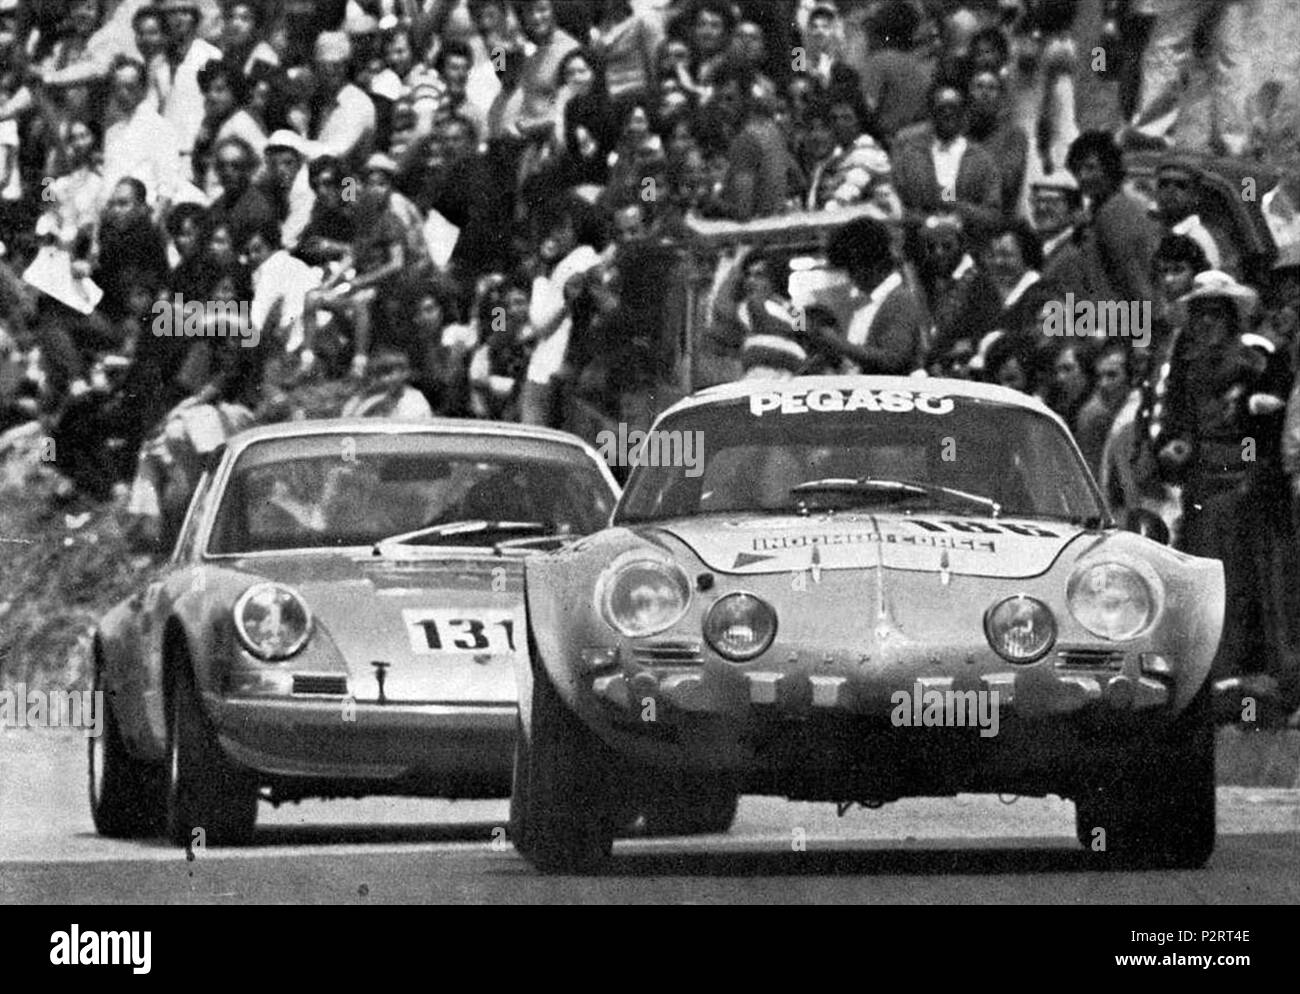 . Province de Palerme (Sicile, Italie), 'Piccolo Madonie' circuit routier, le 13 mai 1973. Pilote de course automobile italien Giuseppe Spatafora sur une Alpine-Renault A110 1.3 (GT 1.3) de la Scuderia Pegaso, Indomar liens sponsorisés Corse/Pegaso, précède une Porsche lors de la Targa Florio de 1973. 13 mai 1973. Inconnu 37 Giuseppe Spatafora - Alpine A110 (1973 Targa Florio) Banque D'Images